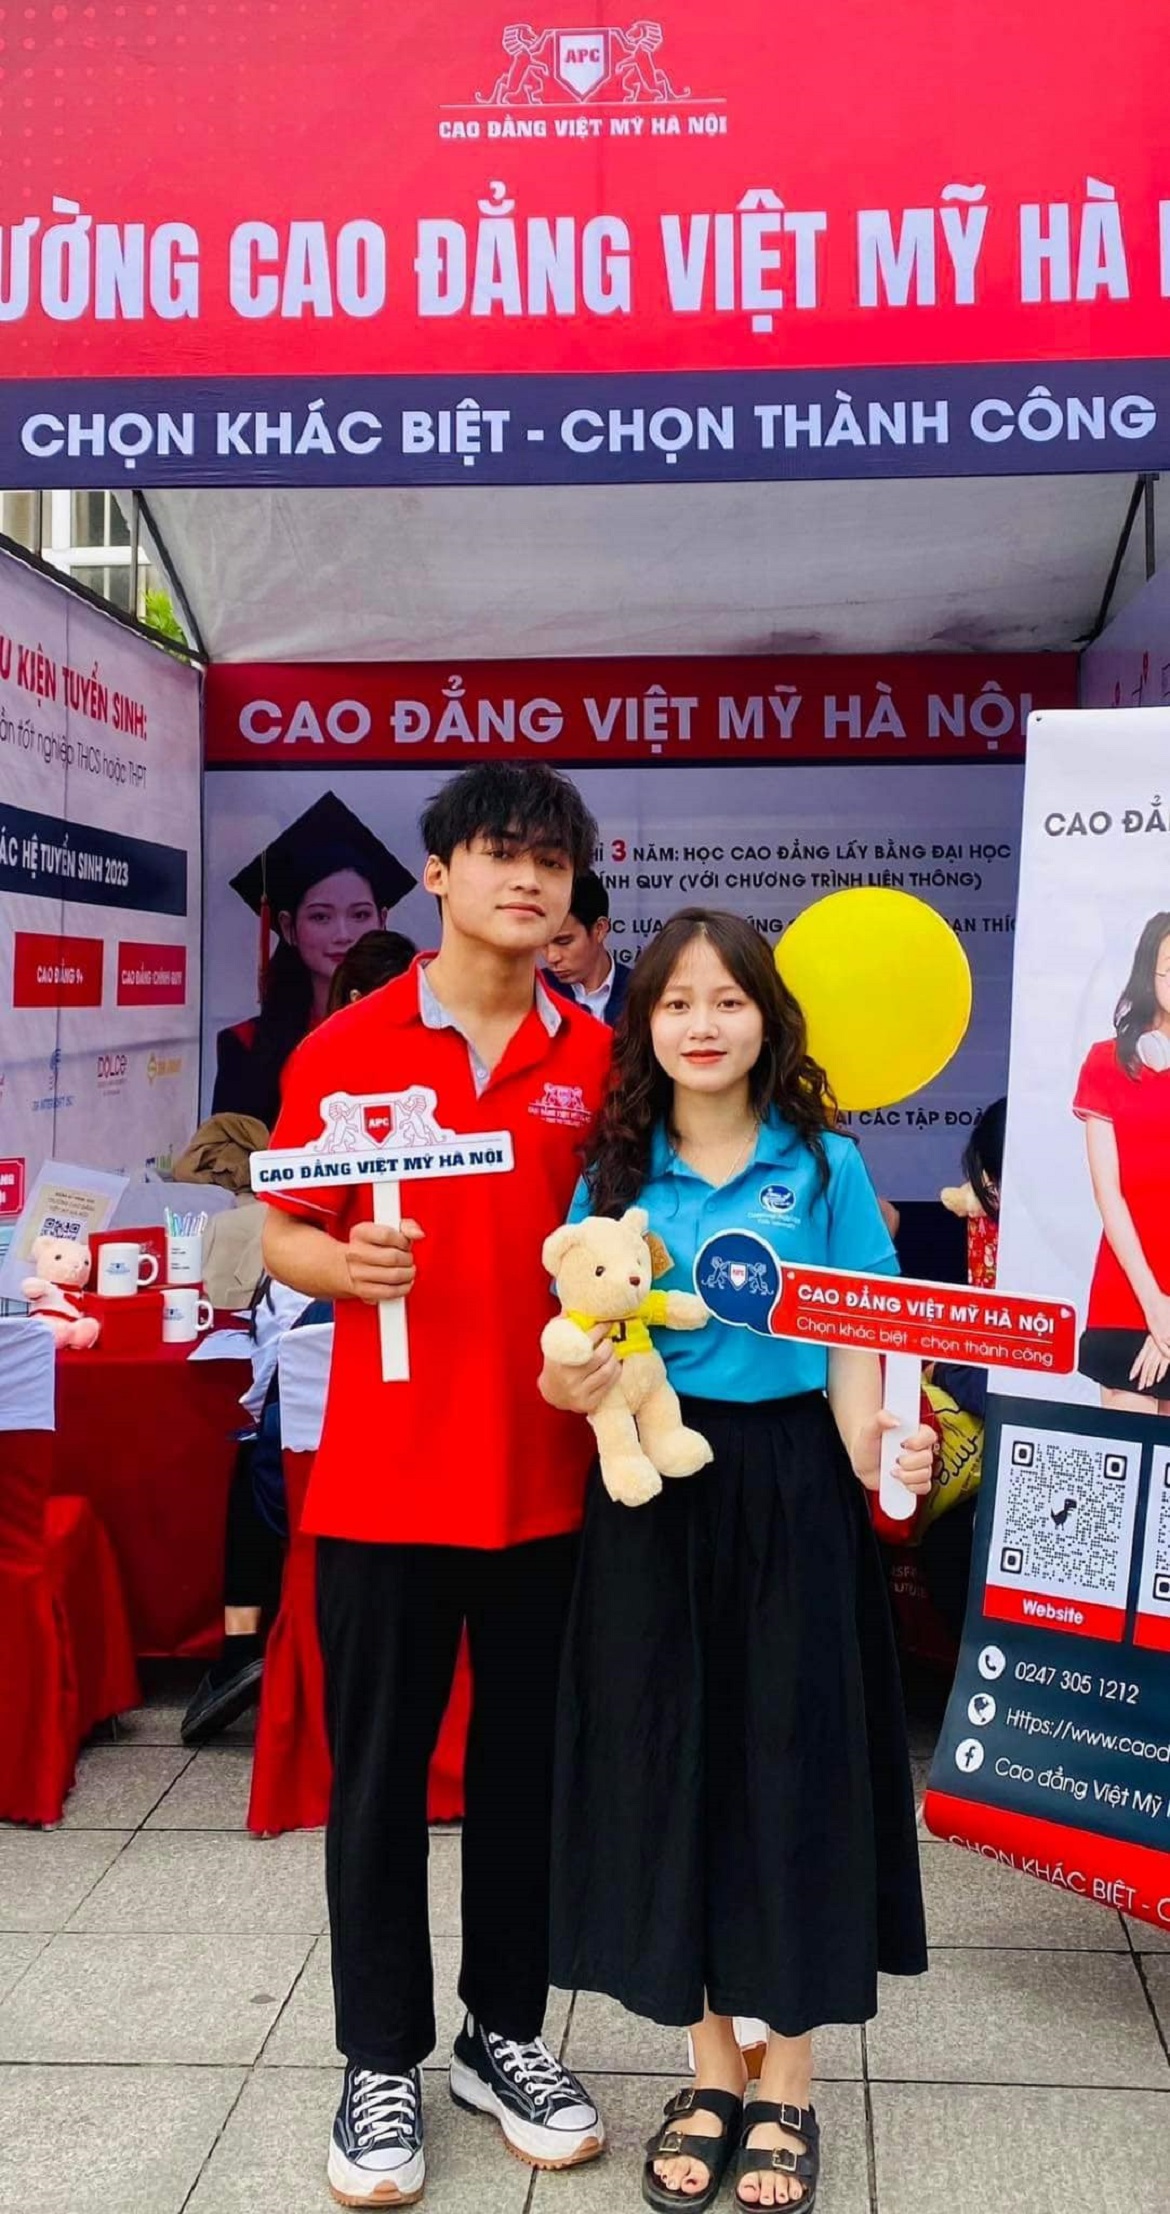 Cao đẳng Việt Mỹ Hà Nội tư vấn tuyên sinh 2023